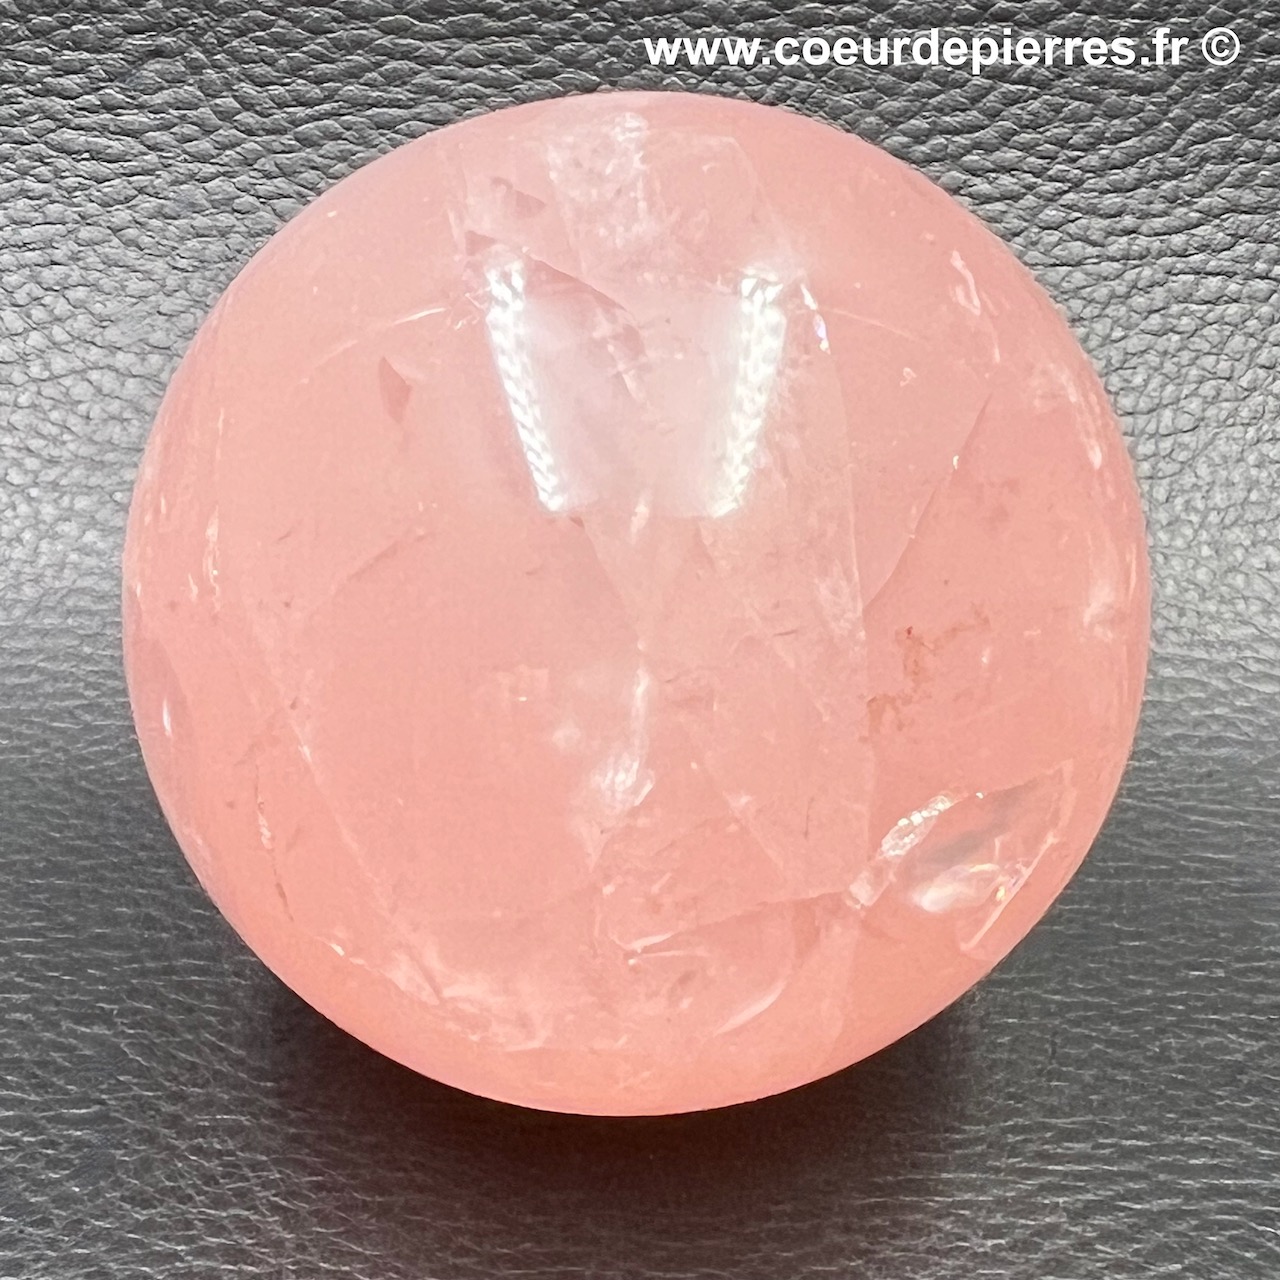 Sphère en quartz rose de Madagascar 0,425 kg (Réf sqr13)